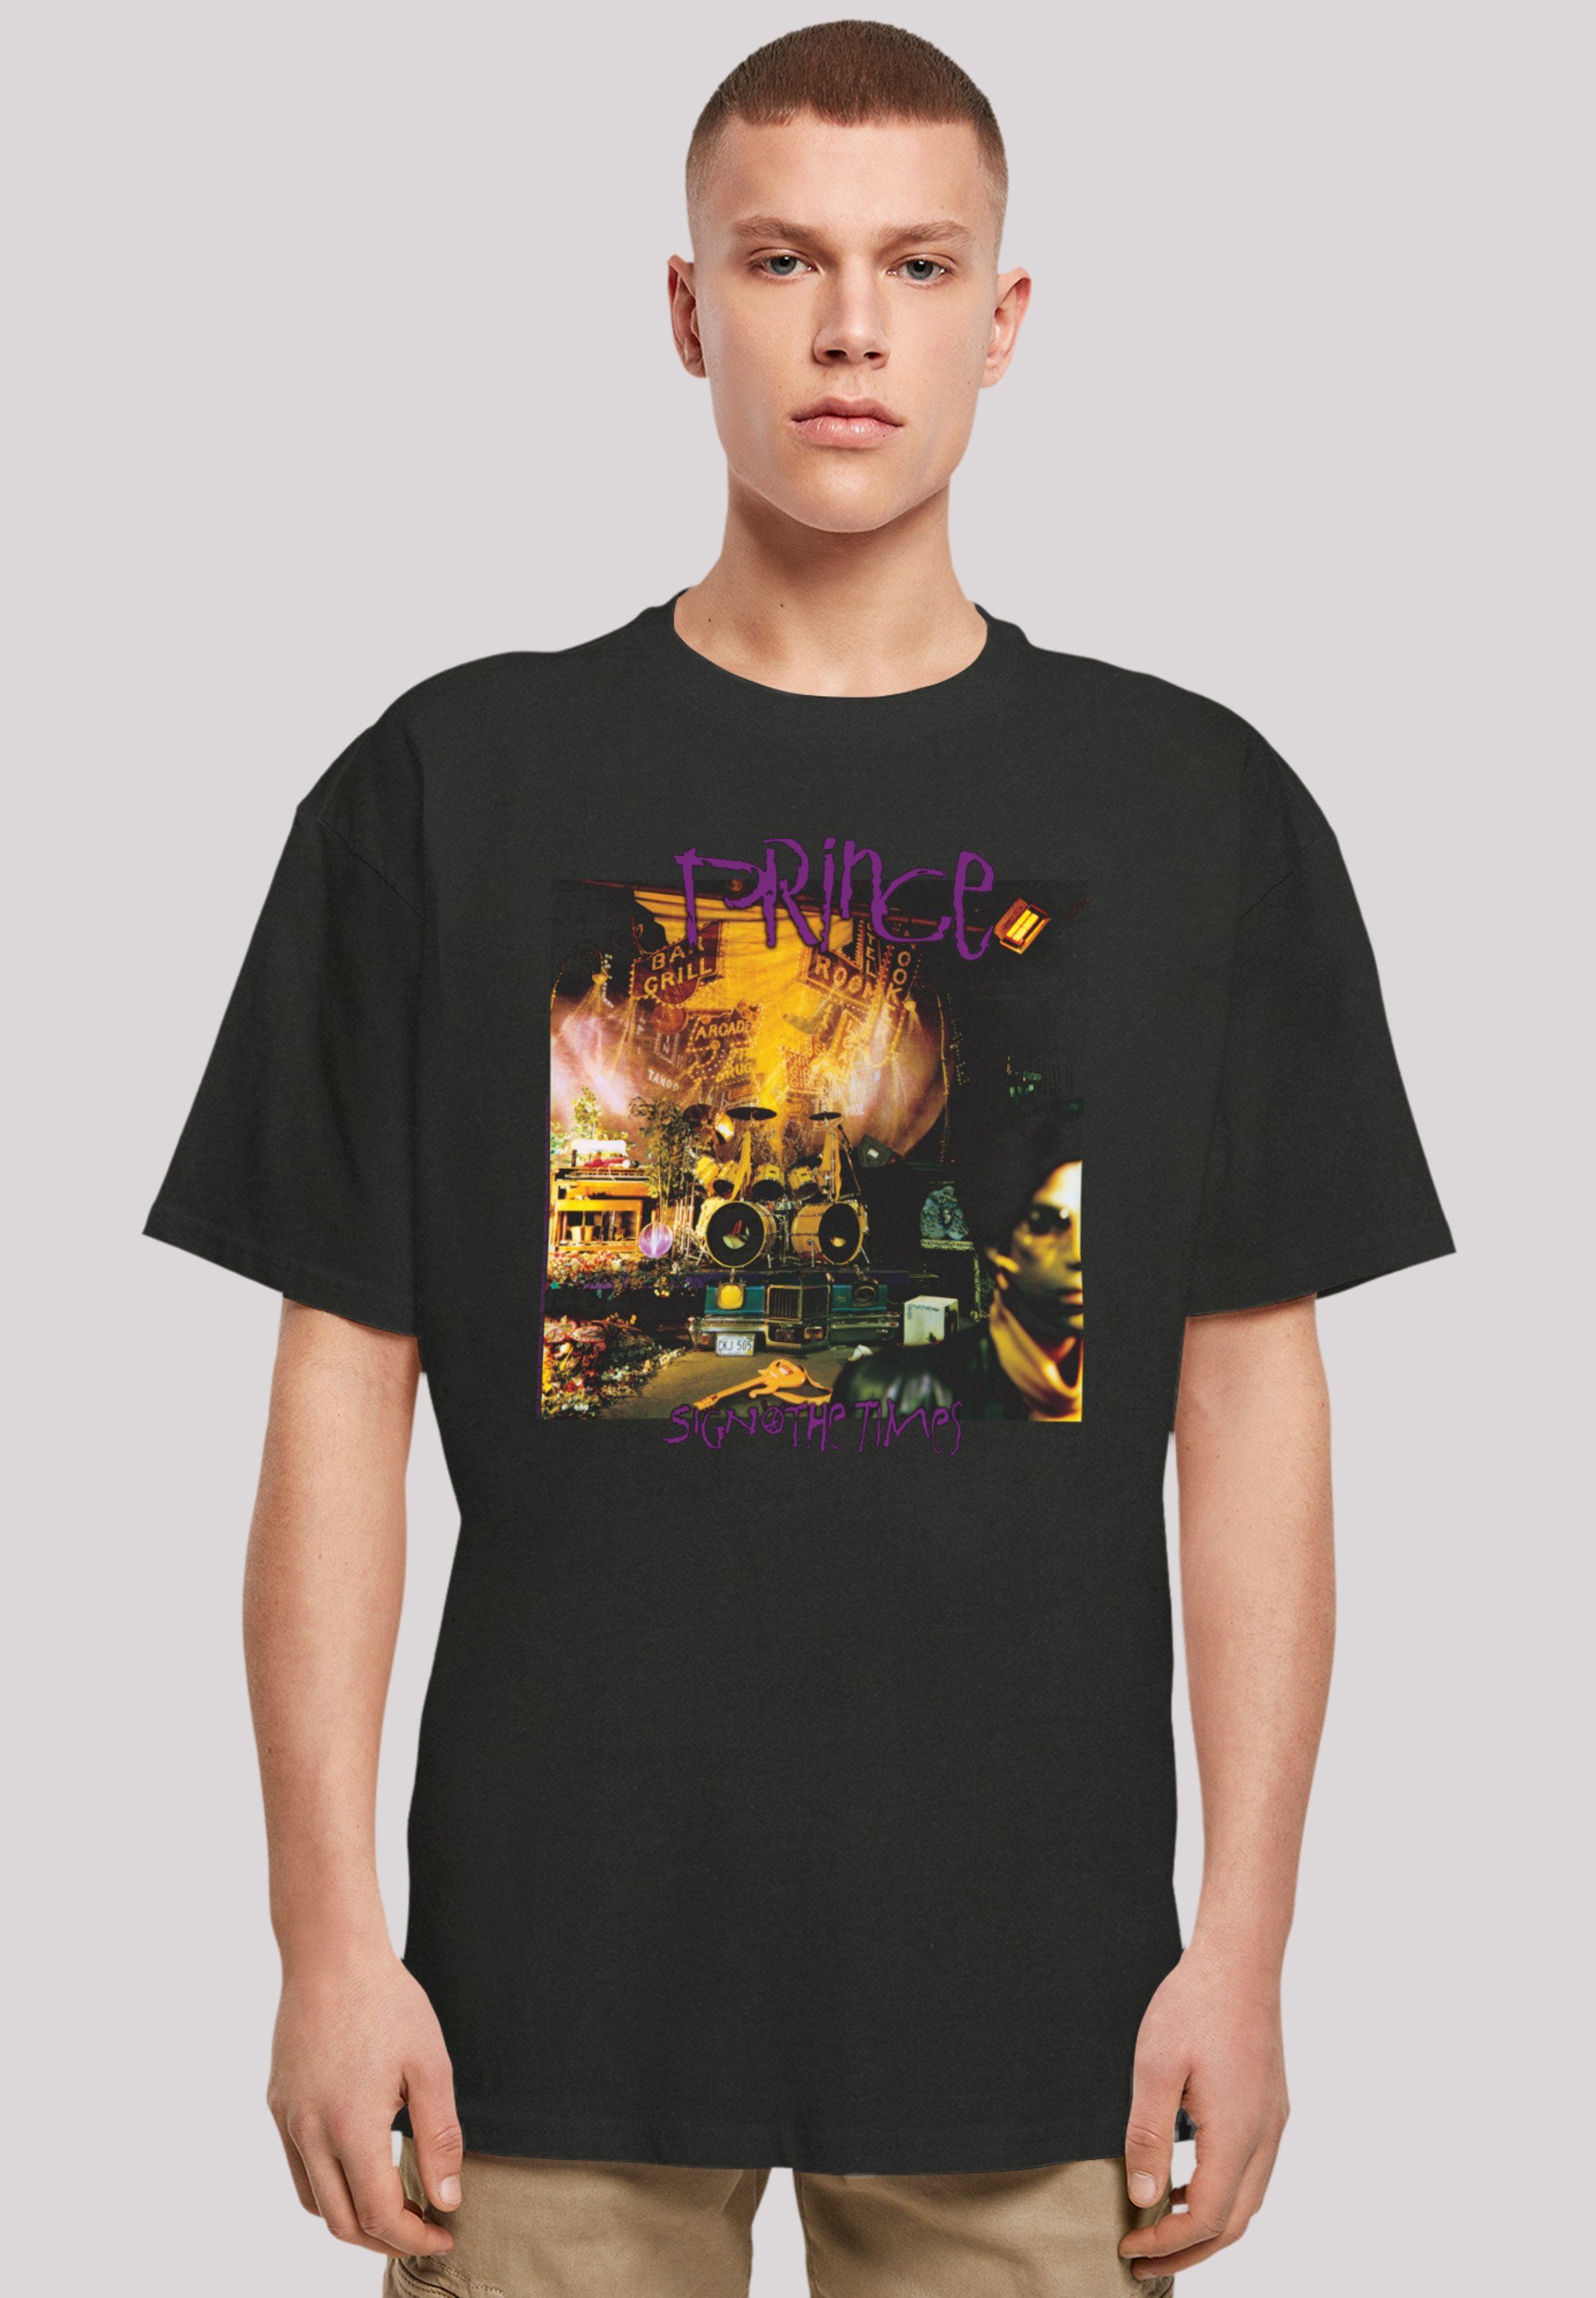 Band, The Premium Sign O\' F4NT4STIC T-Shirt Schultern Prince Times Qualität, Rock-Musik, Passform überschnittene und Weite Musik